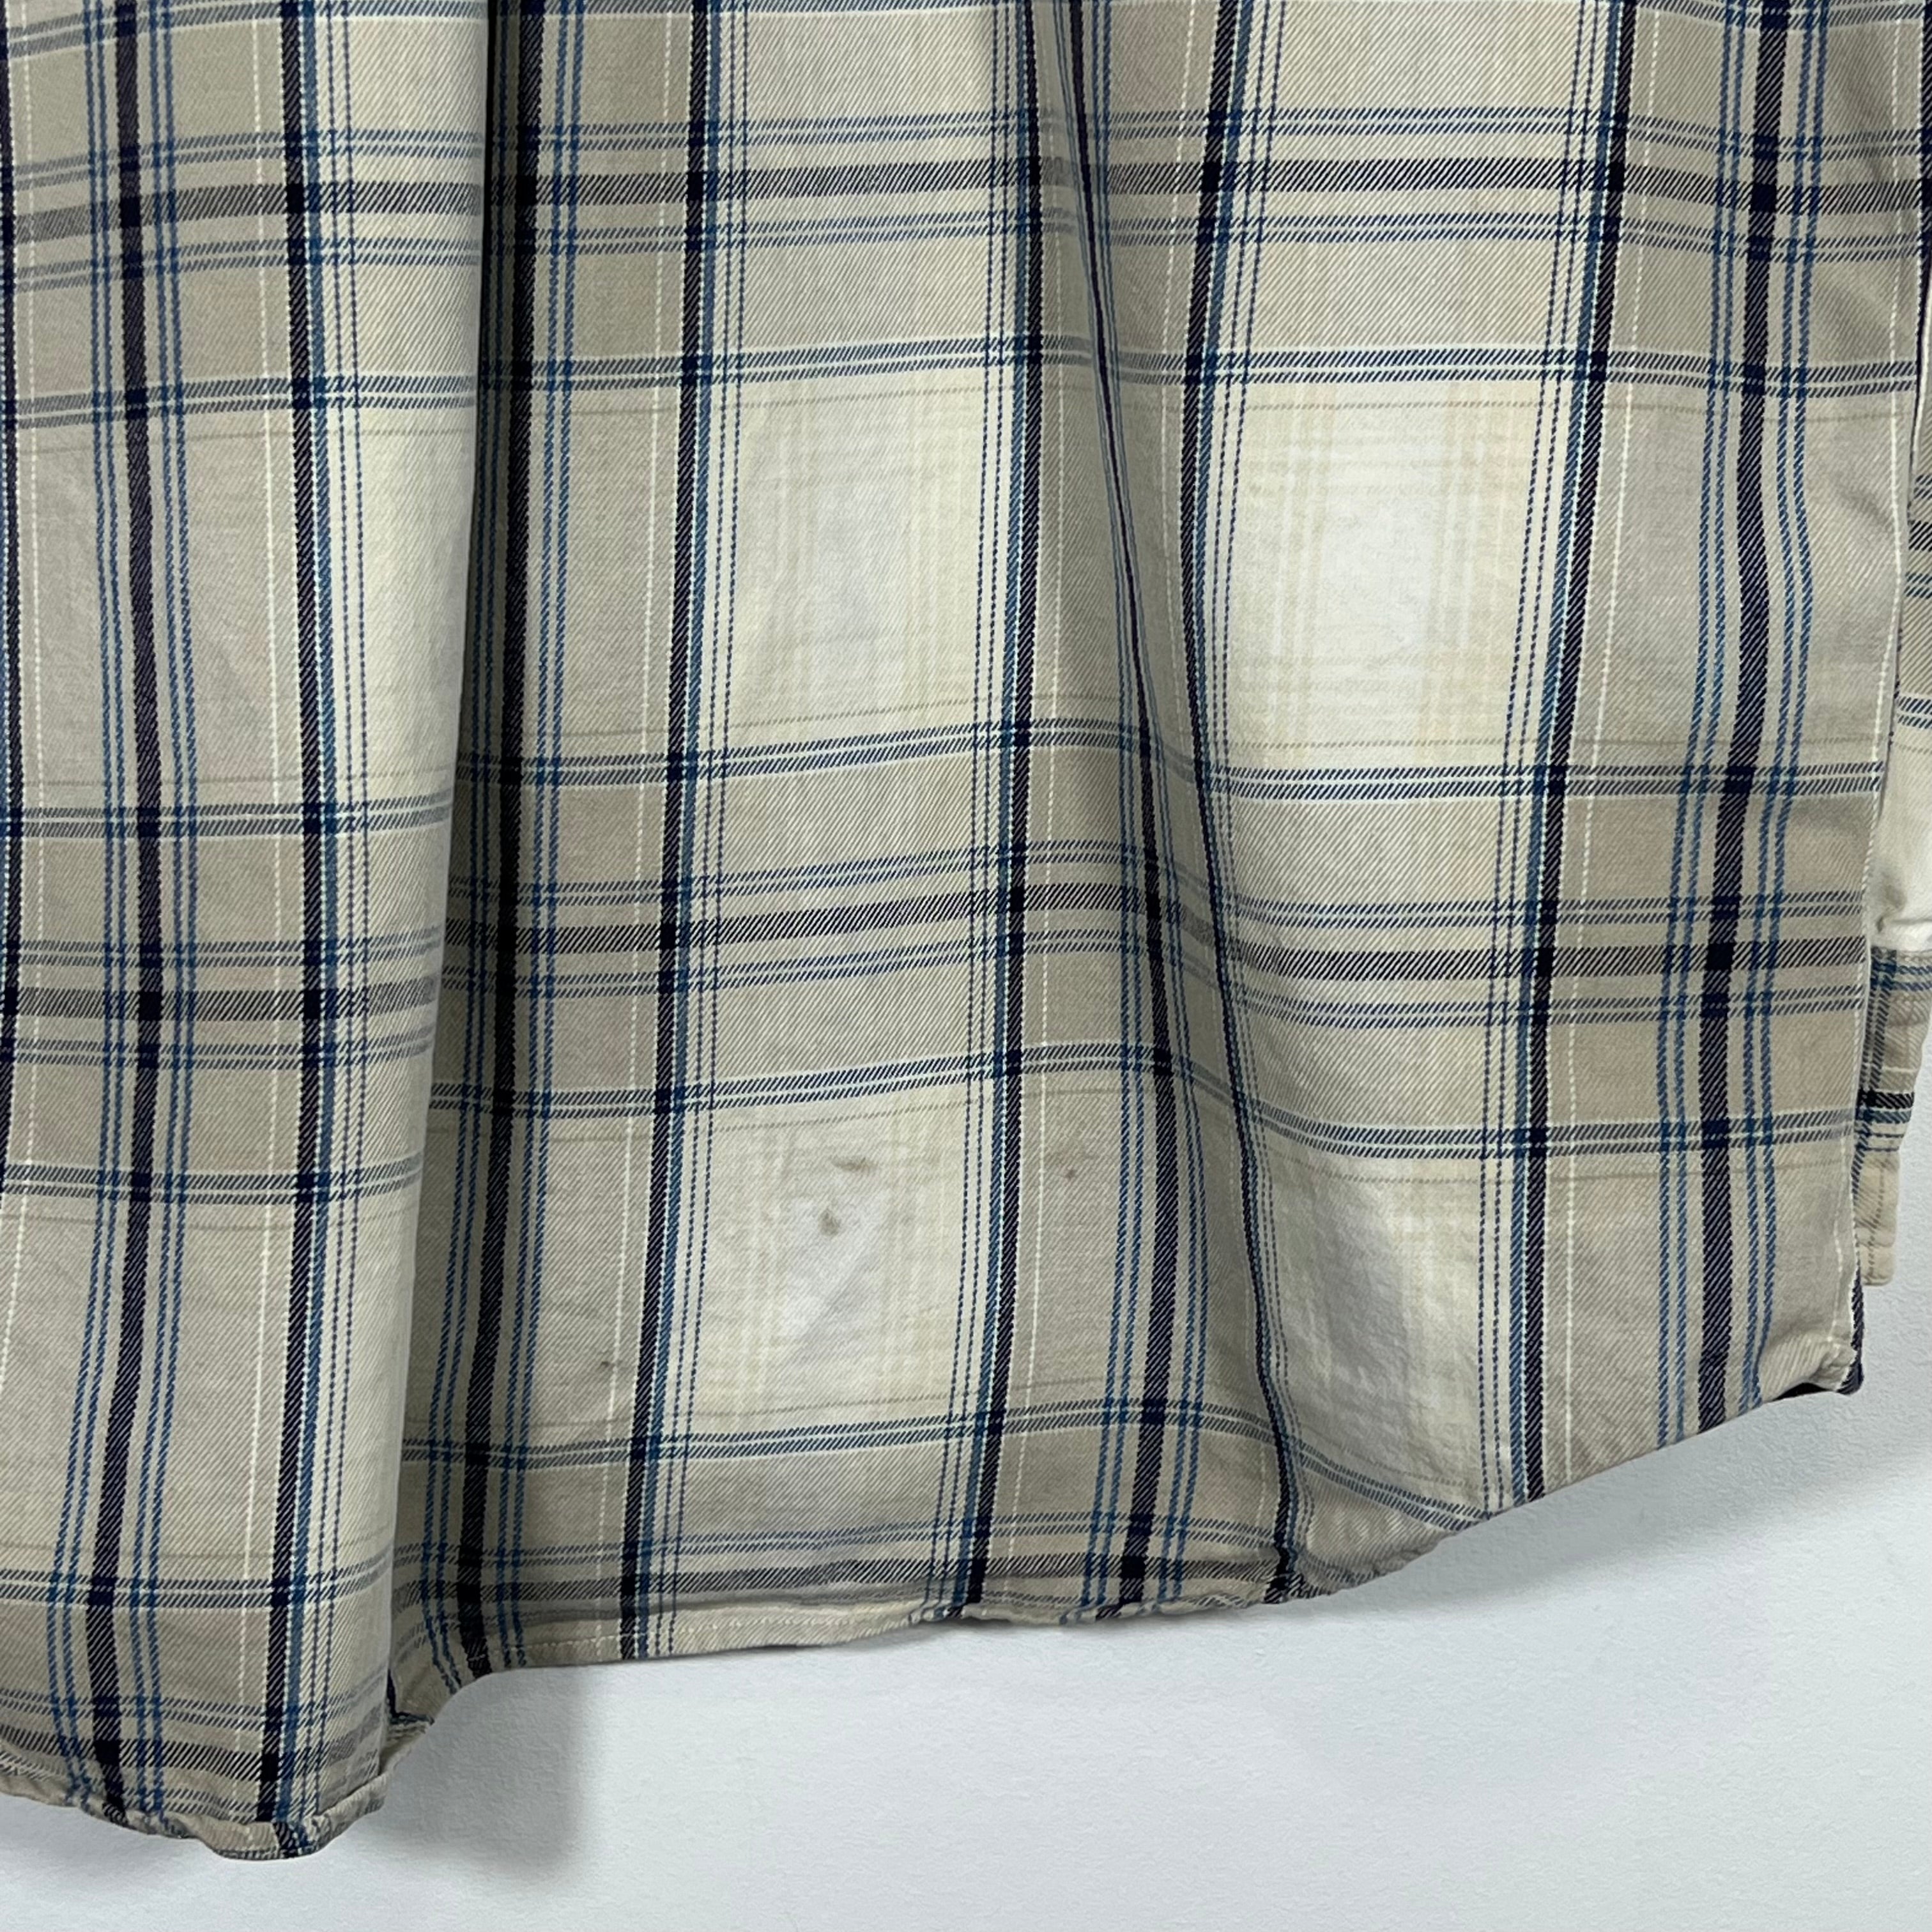 Vintage Chaps Ralph Lauren Buttoned Shirt - Men's Large